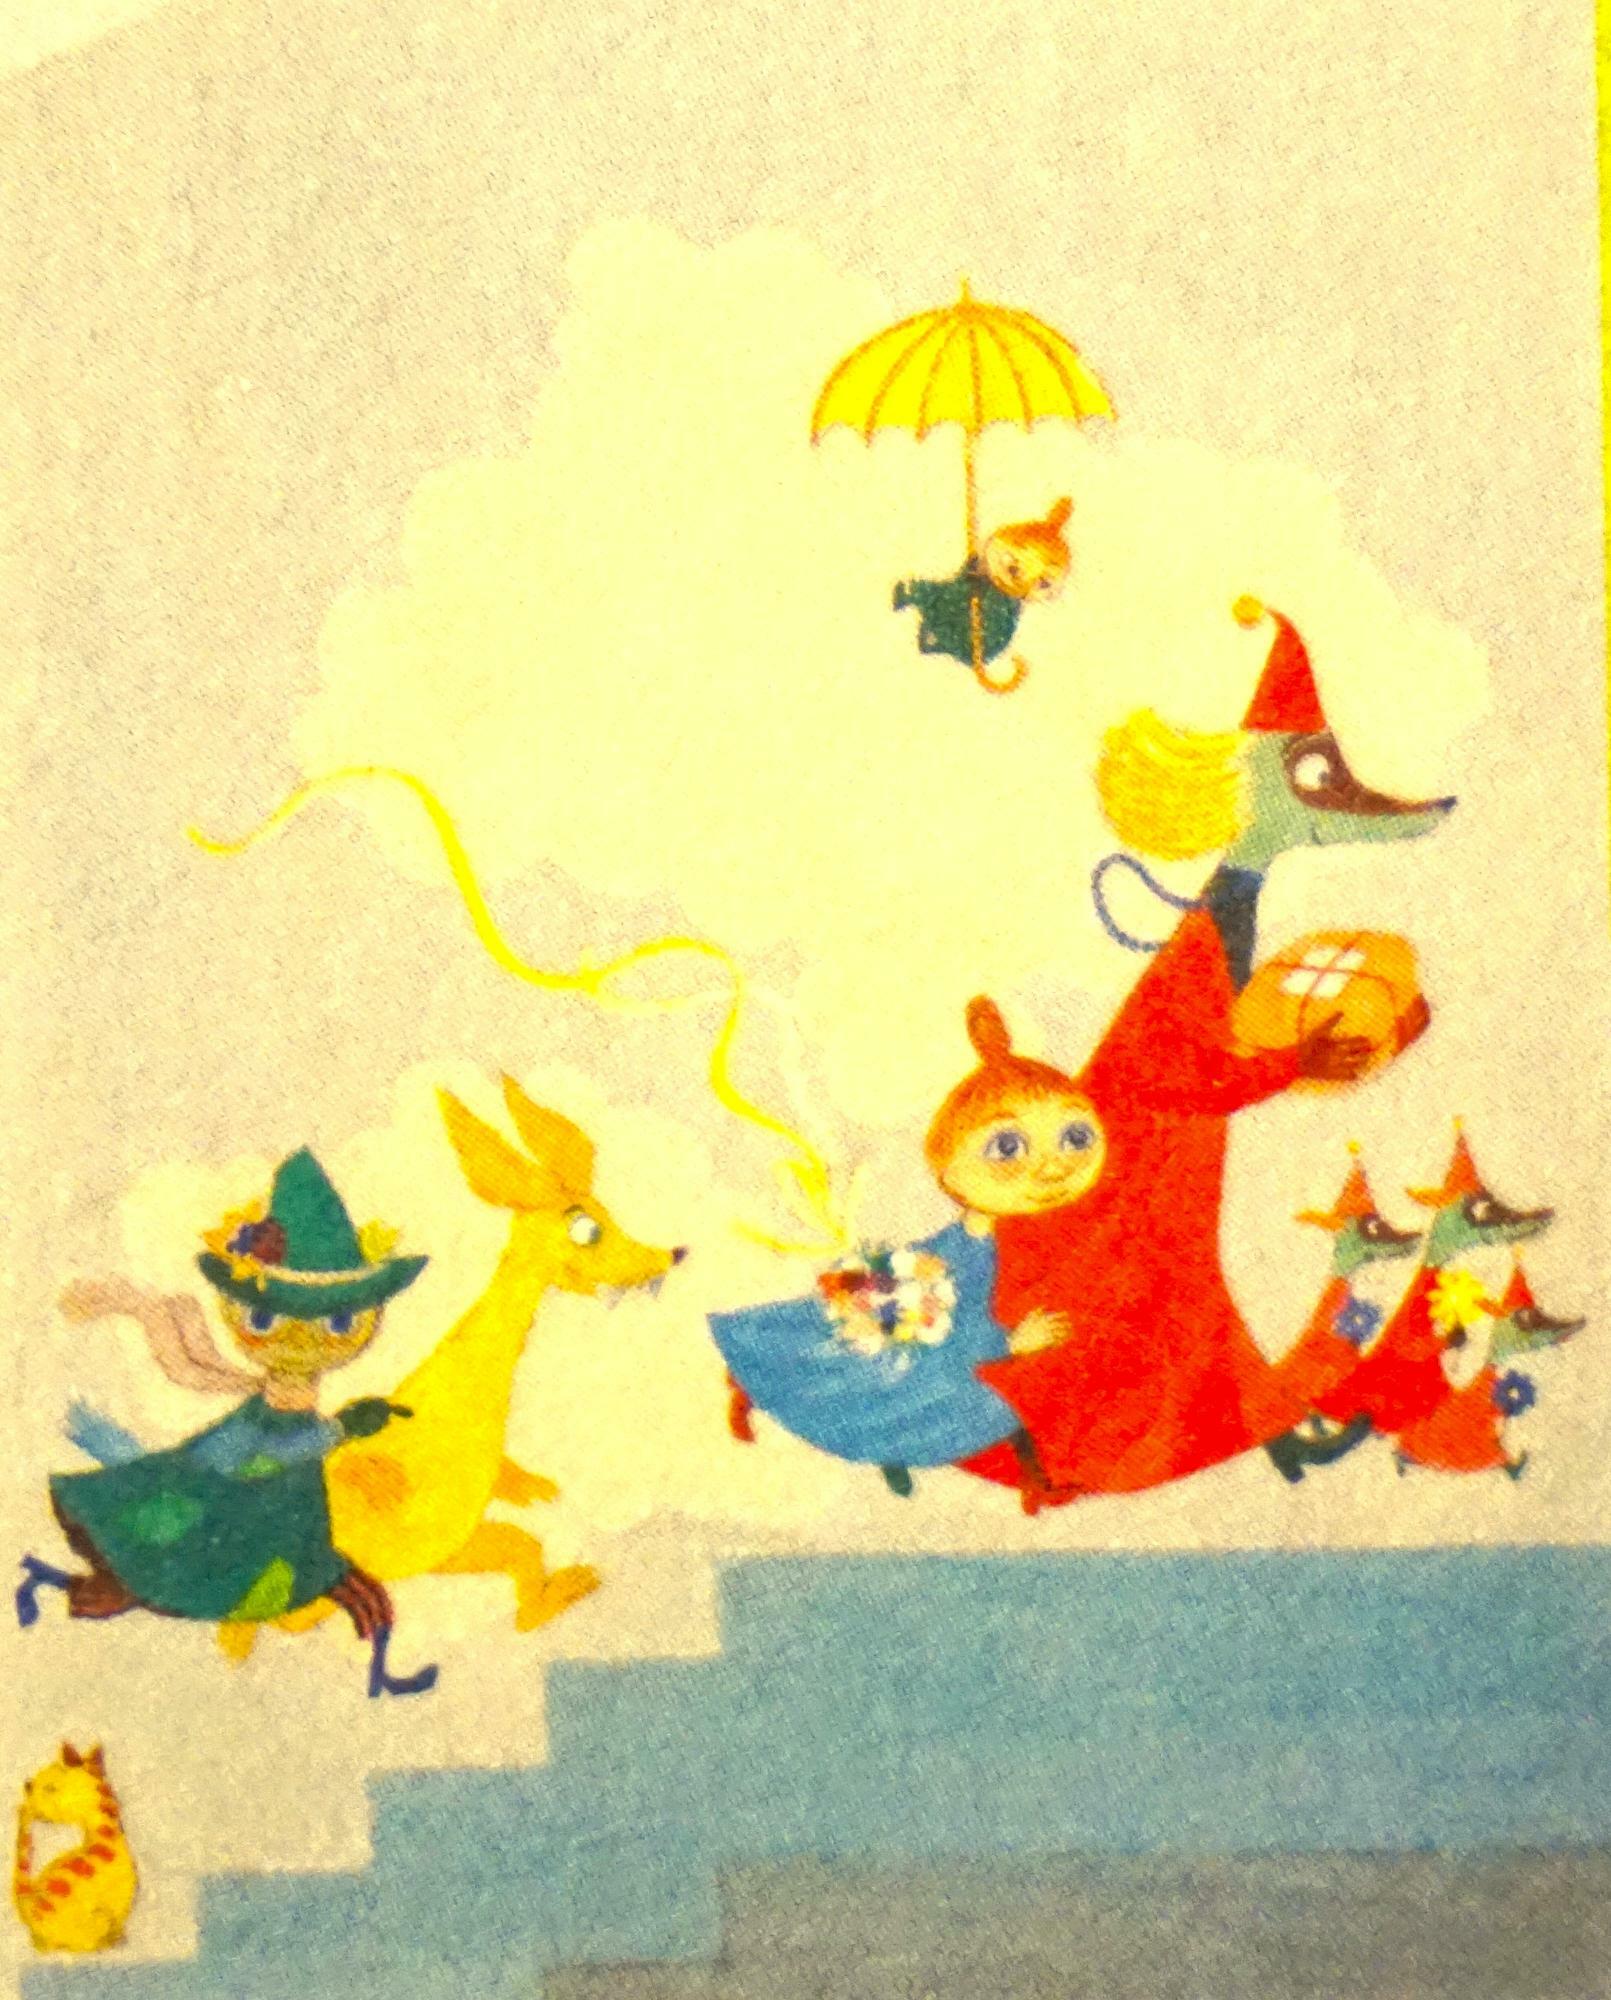 トーベ・ヤンソン「アウロラ小児病院壁画『遊び』のためのスケッチ」1955年　ヘルシンキ市立美術館蔵　c Moomin Characters TM